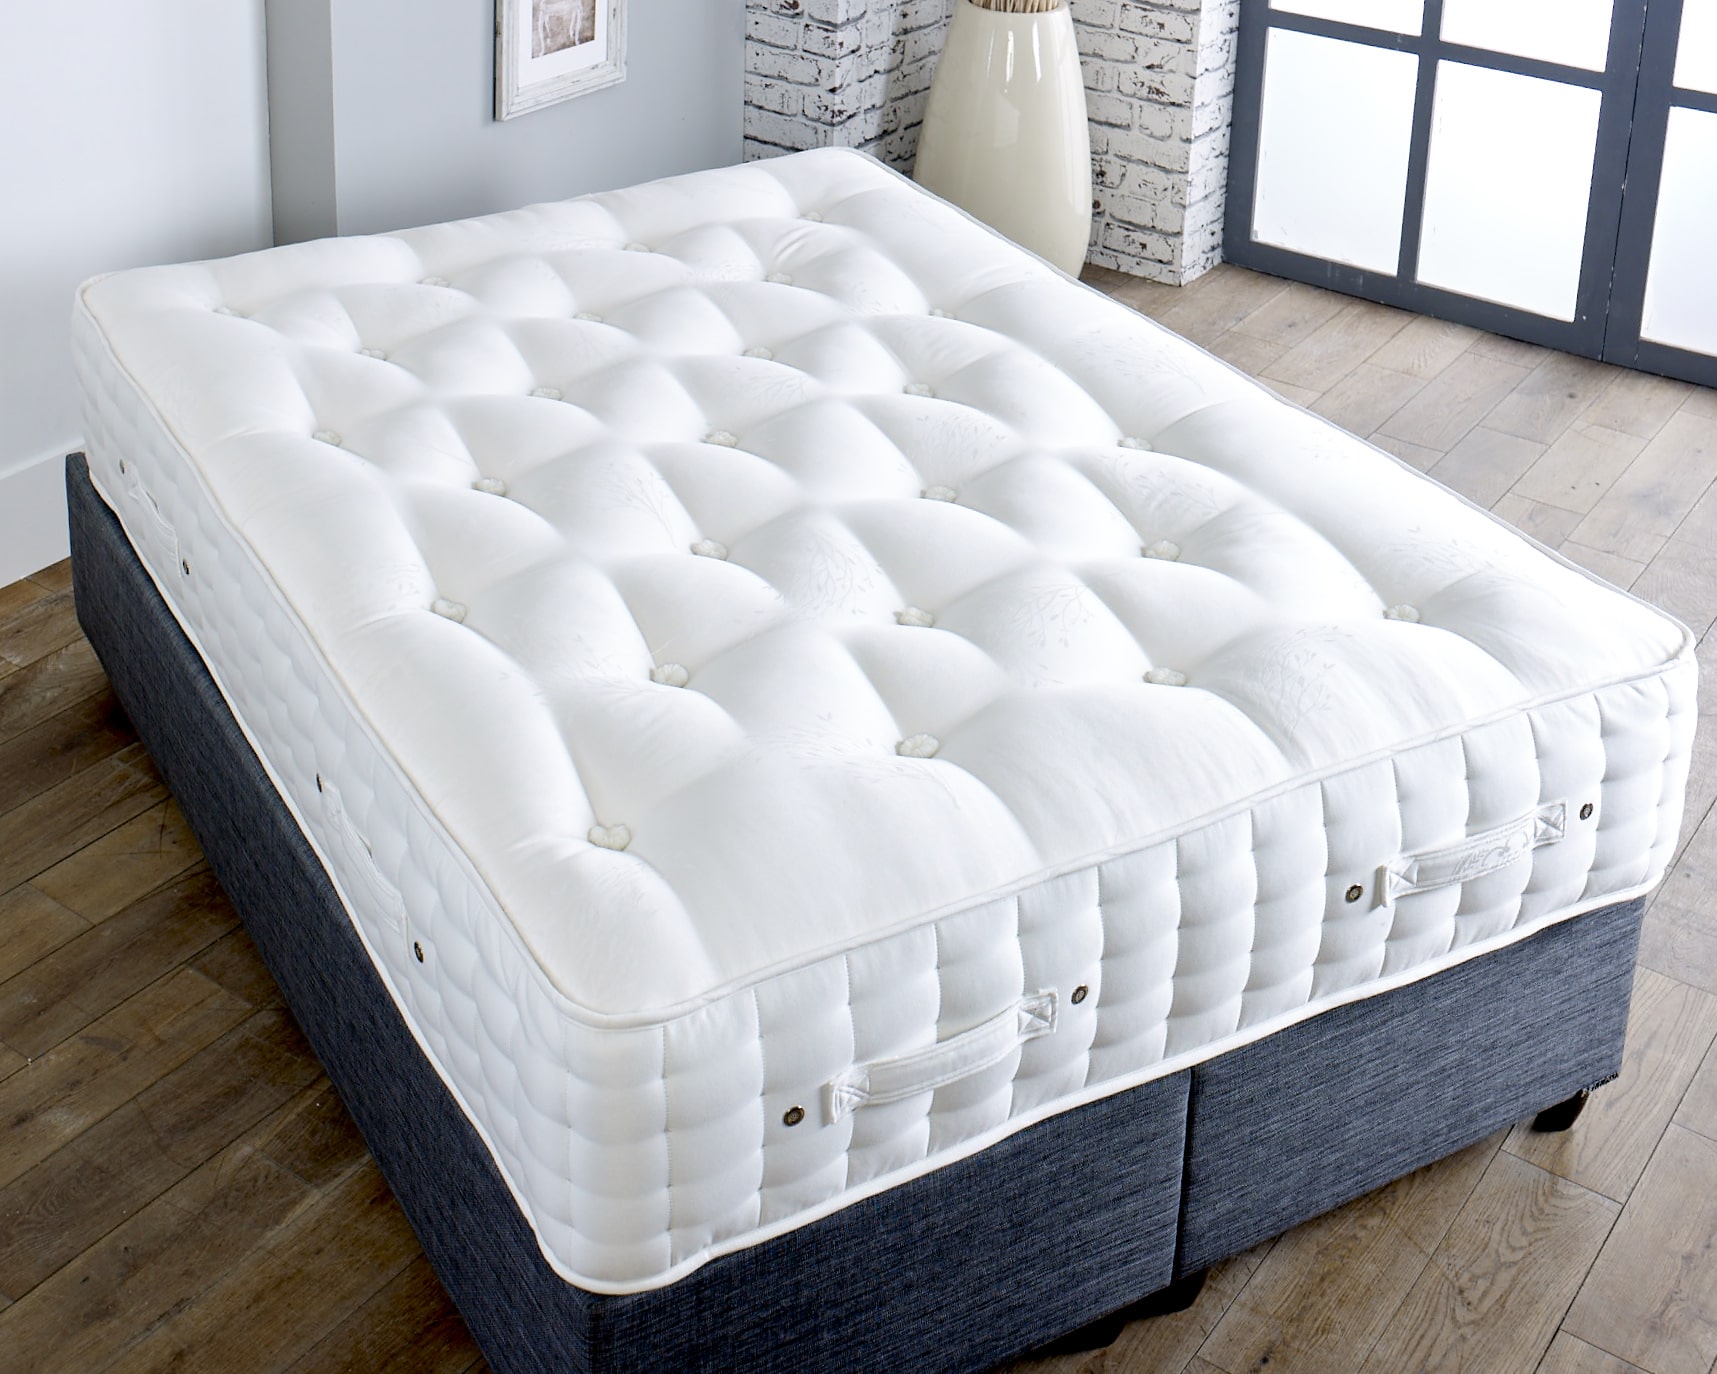 3000 pocket spring mattress